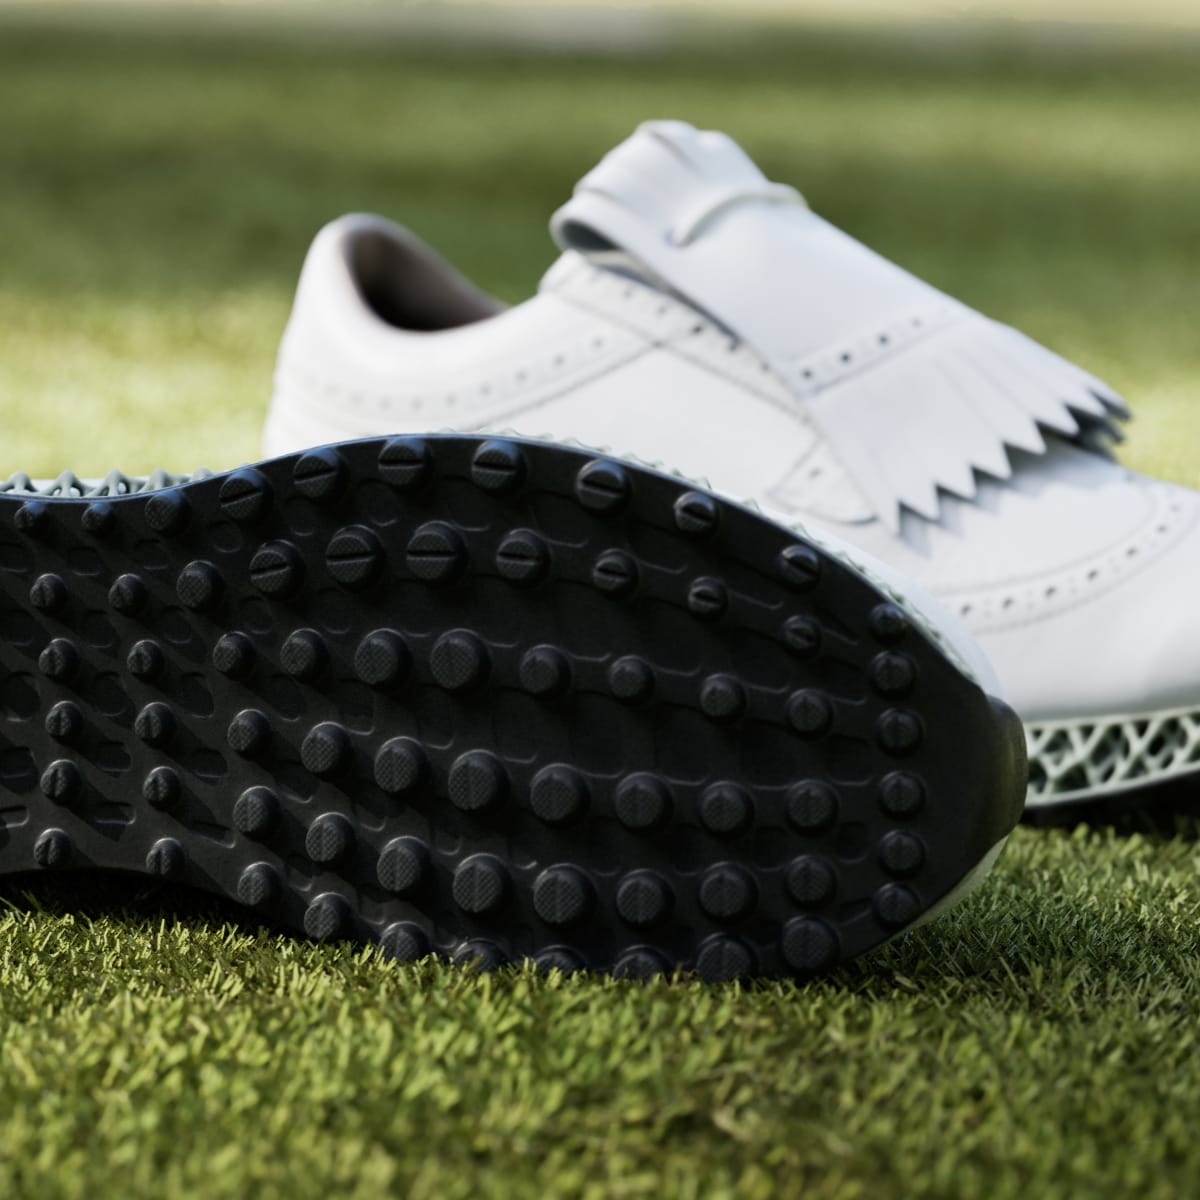 Adidas MC87 Adicross 4D Spikeless Golf Shoes. 8